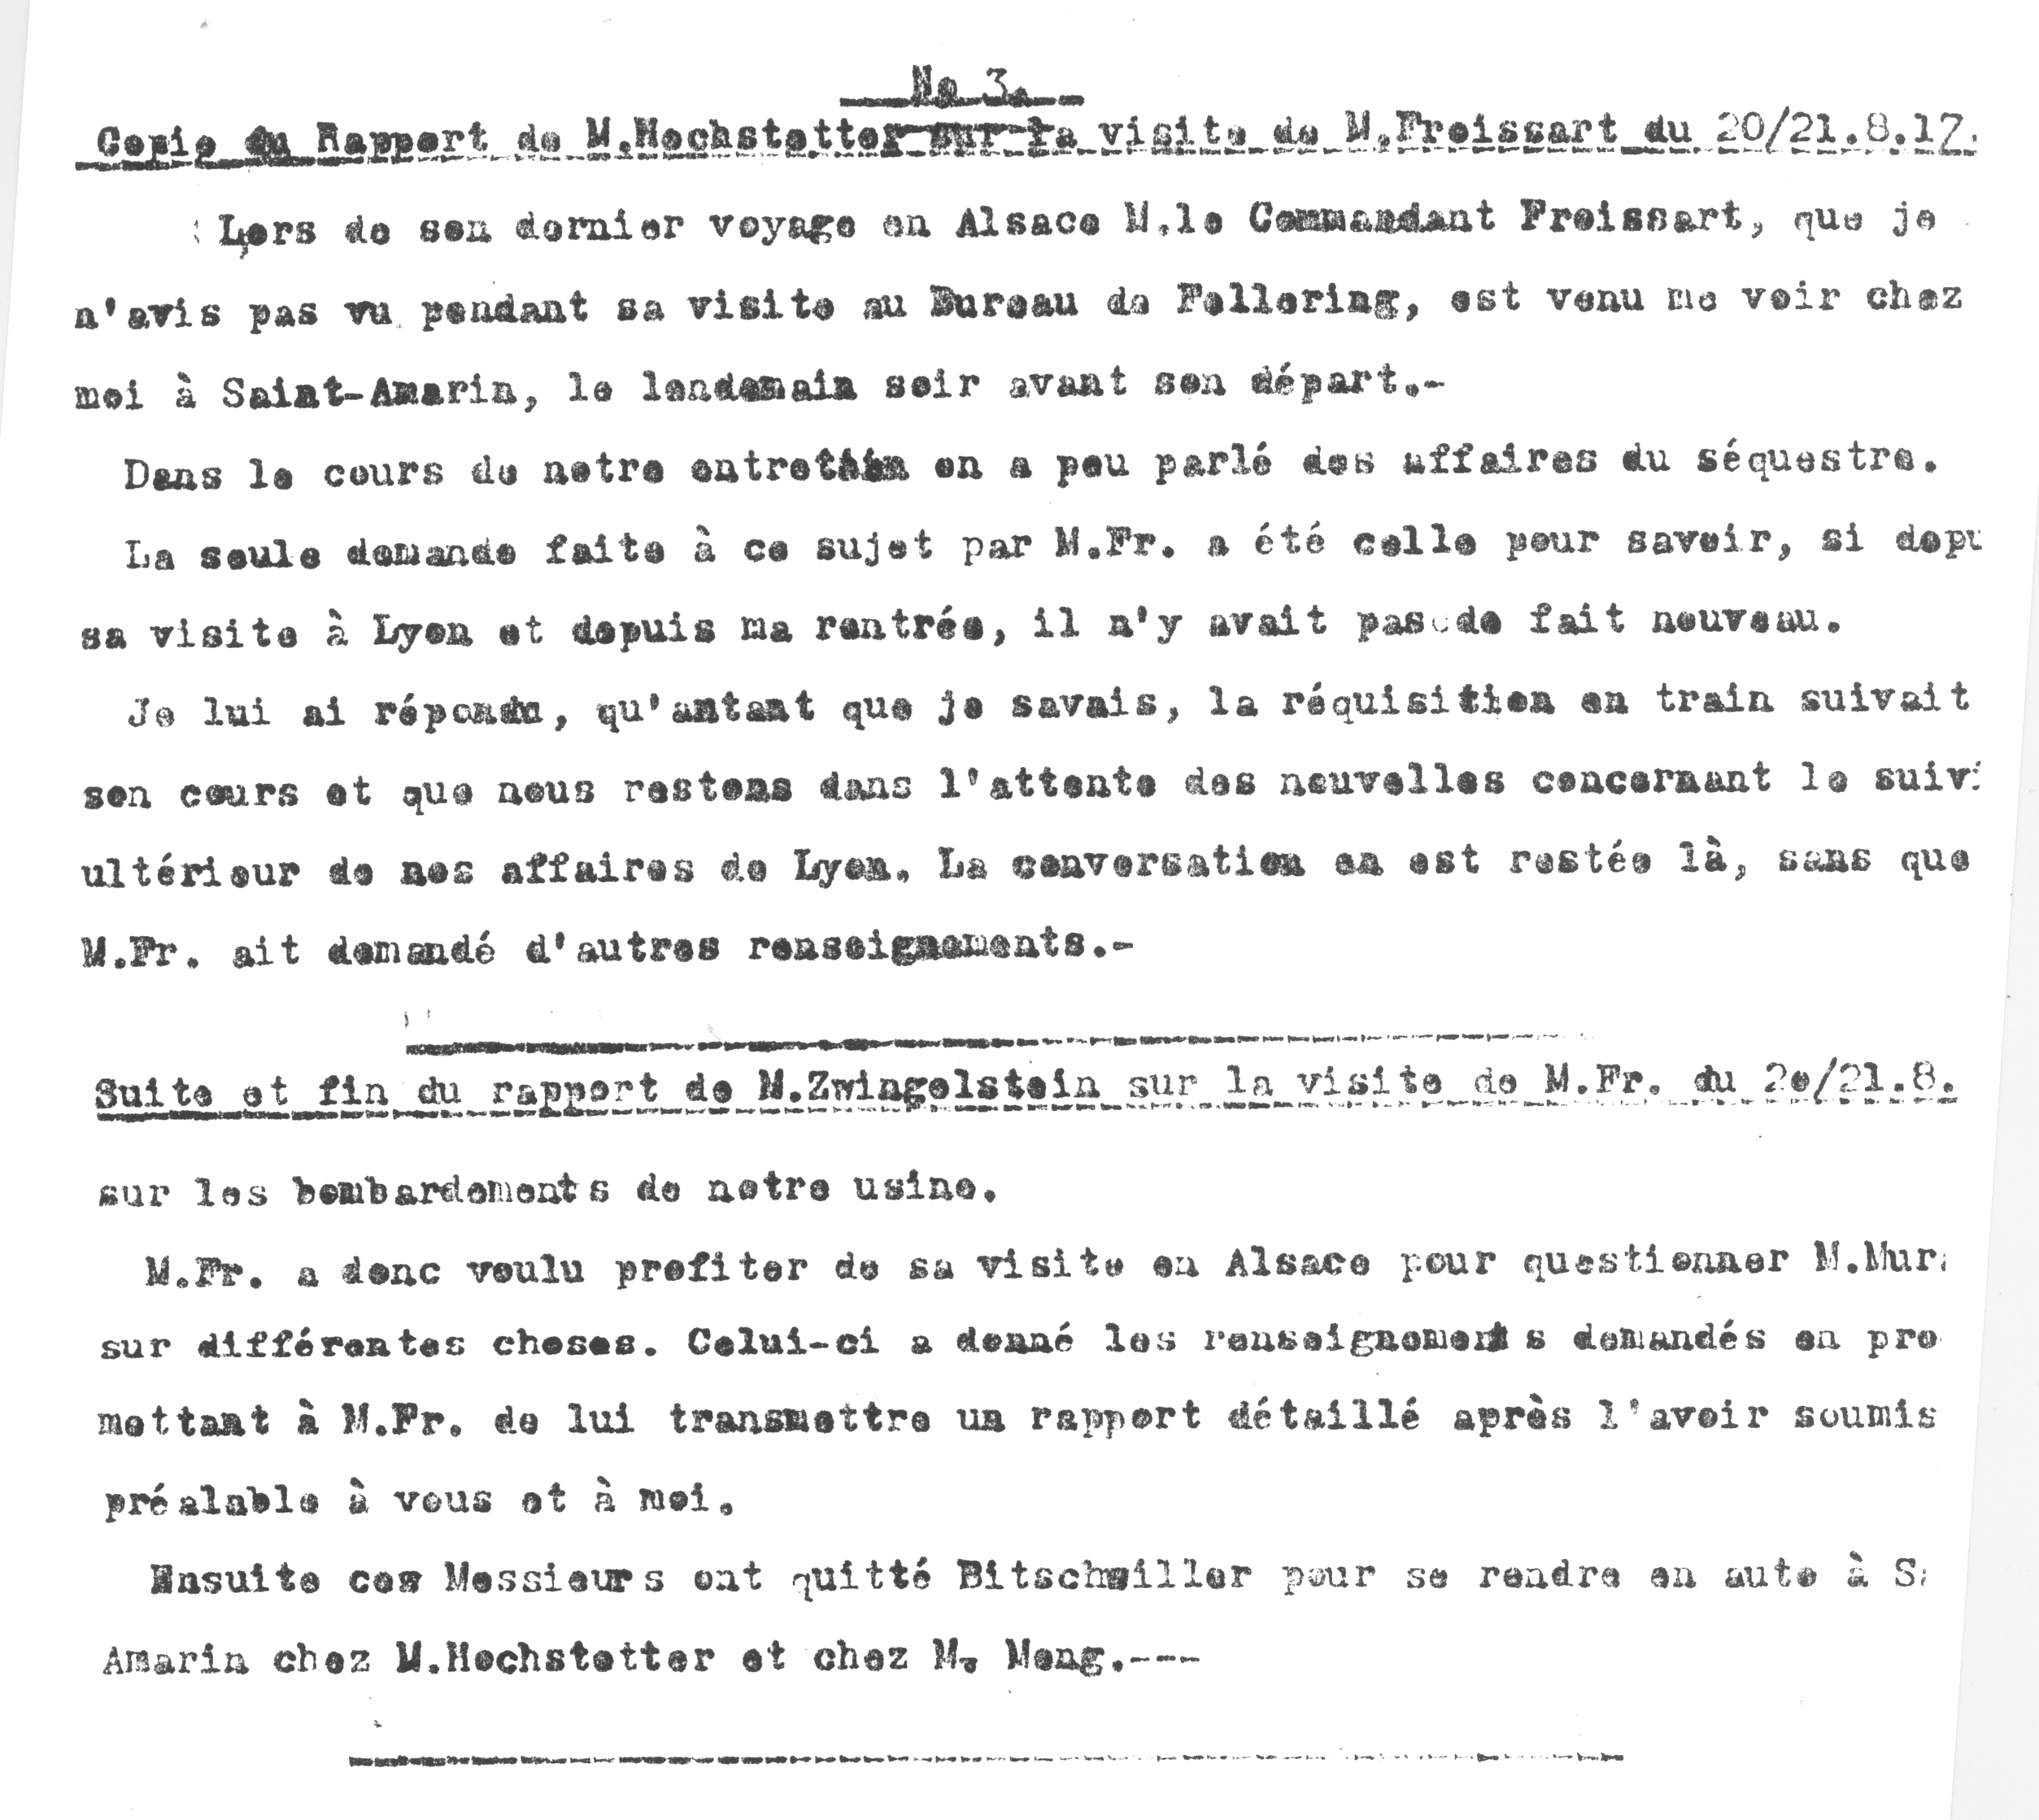 1917 – Copie du rapport de M. Hochstetter sur la visite de M. Froissart des 20/21 Août 1917